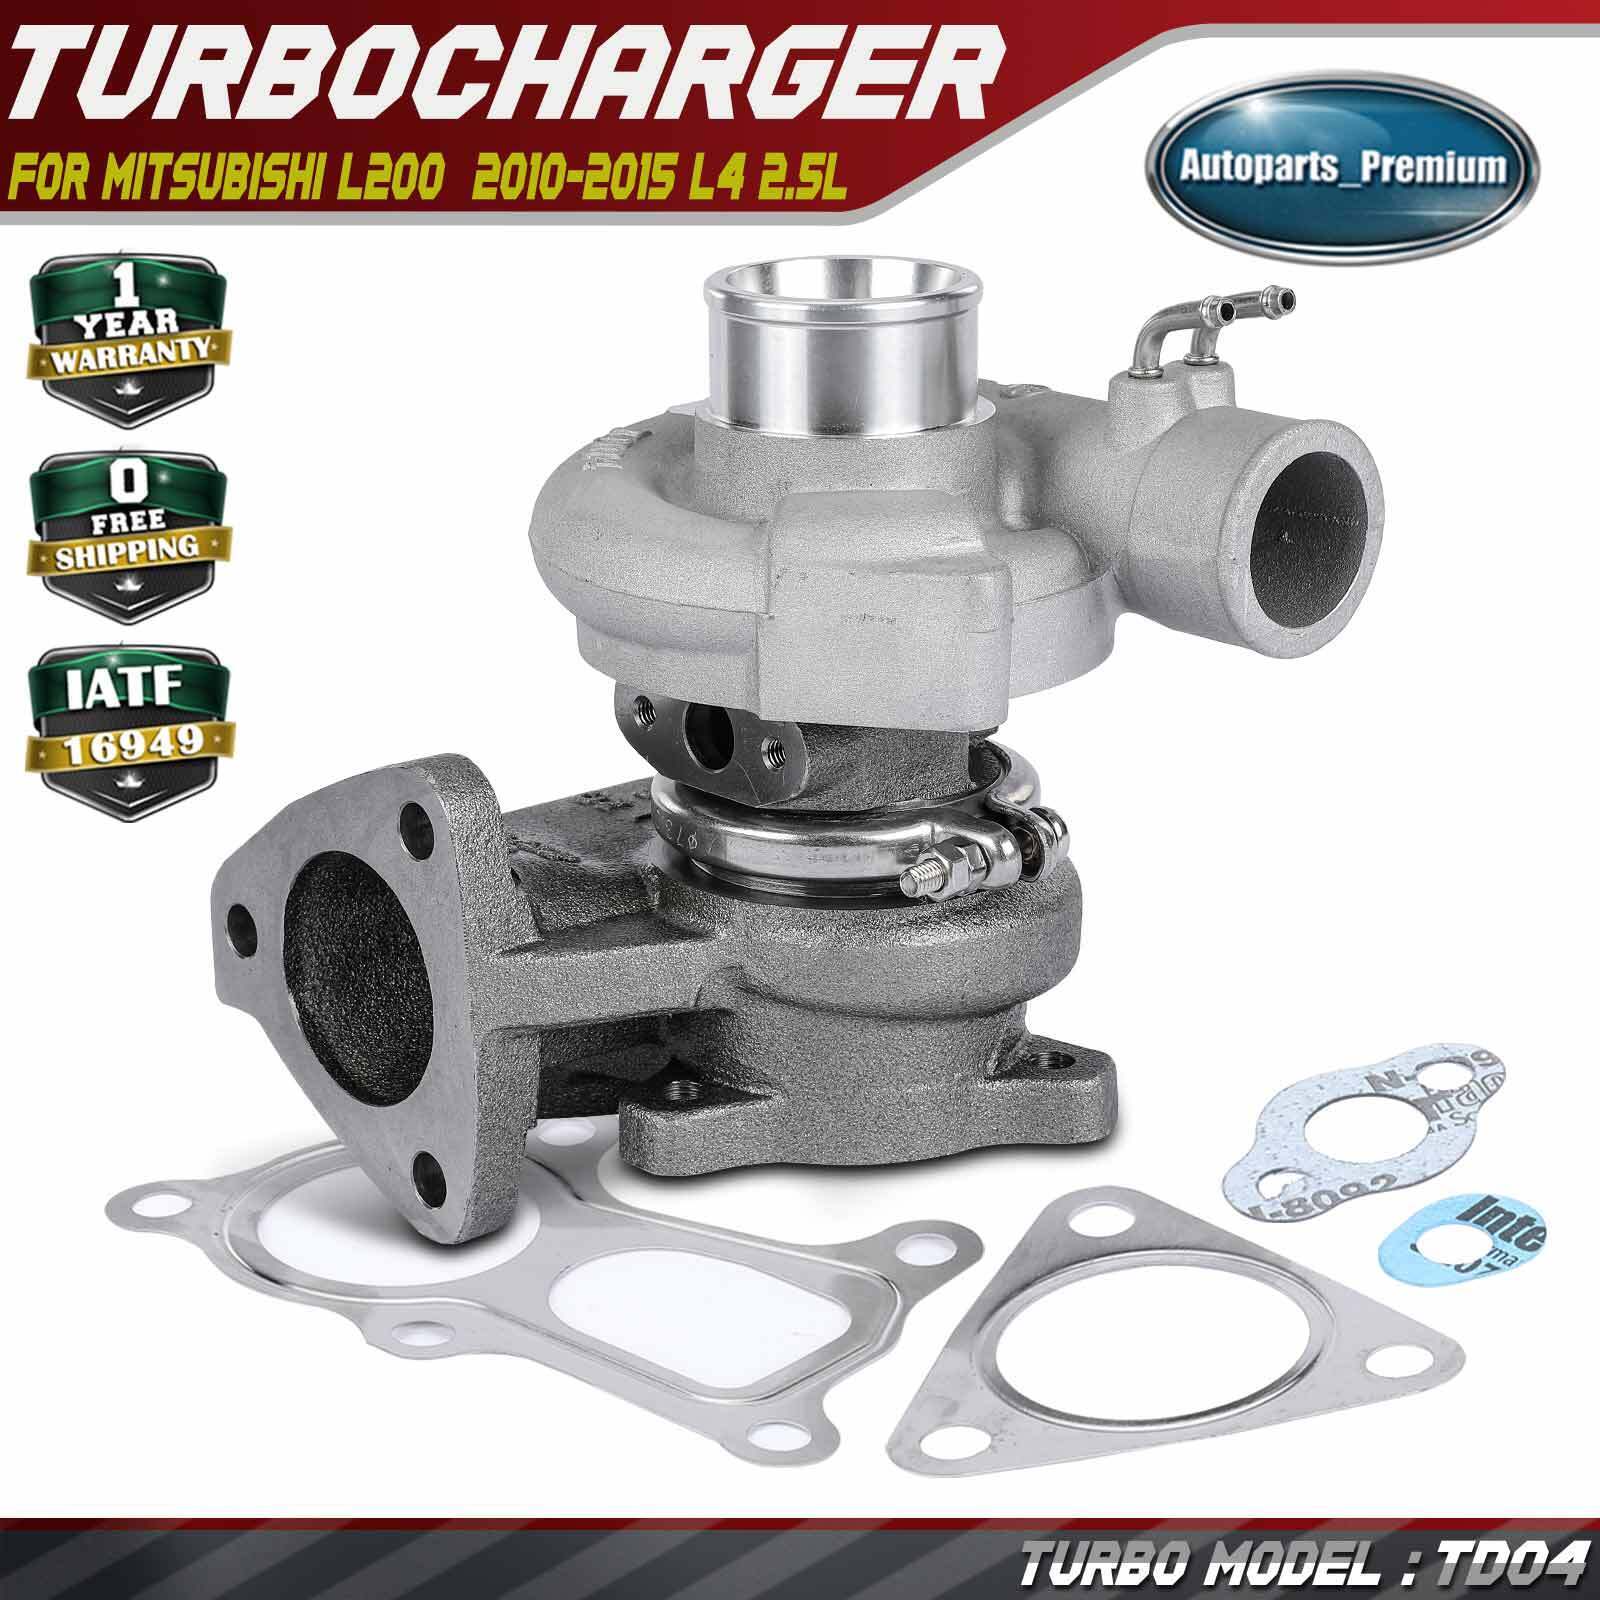 Turbo Turbocharger for Mitsubishi L200 Pajero 2010-2015 L4 2.5L 4D56 49177-01505